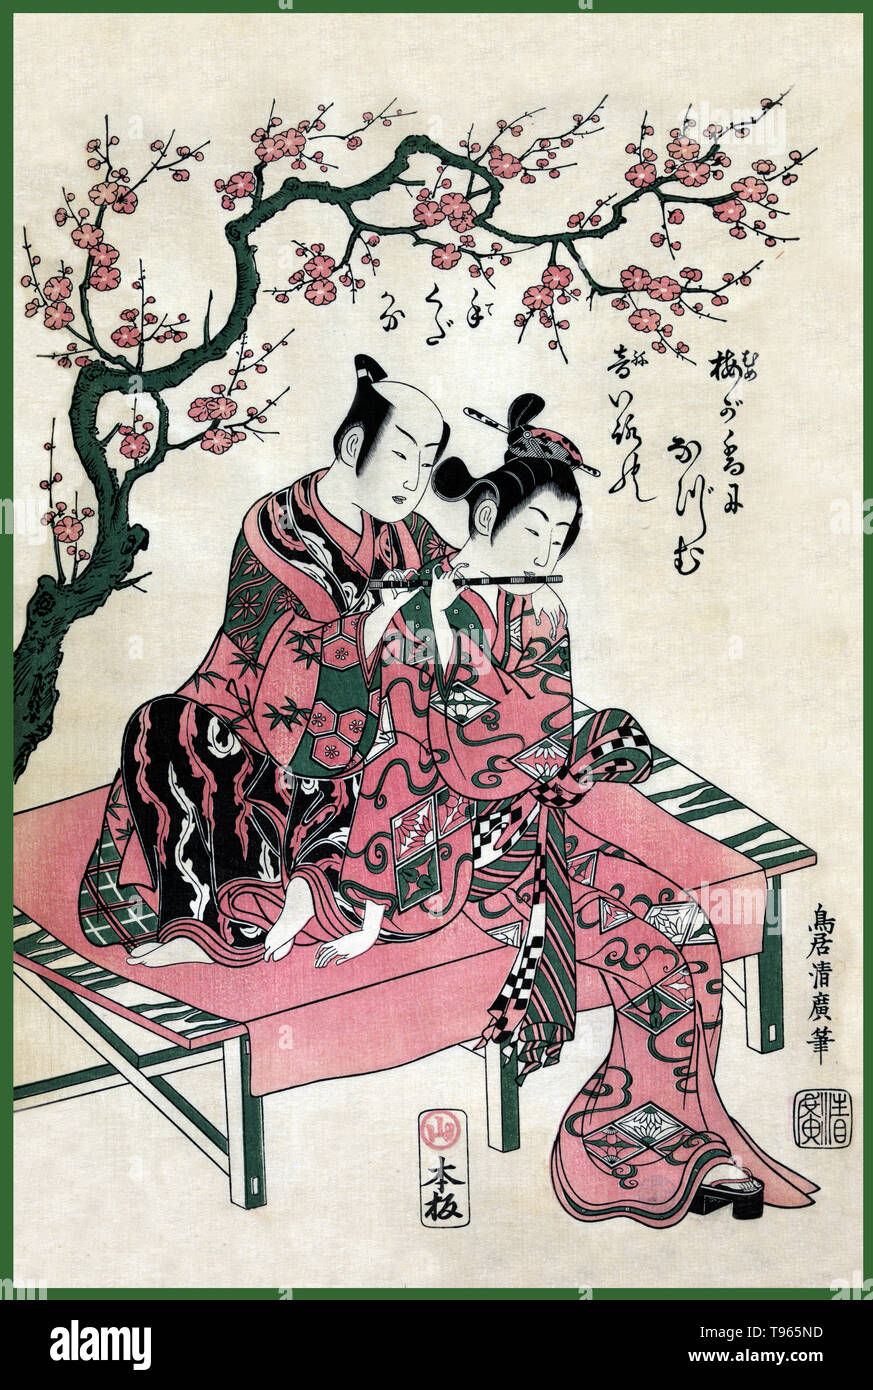 Die harmonische Paar. Ein Mann und eine Frau sitzen auf einer Bank, Spielen, Flöte, unter einem blühenden Baum. Ukiyo-e (Bilder der fließenden Welt) ist ein Genre der japanischen Kunst, die vom 17. bis 19. Jahrhundert blühte. Ukiyo-e war zentral für die Wahrnehmung des Westens für Japanische Kunst im späten 19. Jahrhundert. Aus den 1870er Jahren Japonismus zu einem bedeutenden Trend und hatte einen starken Einfluss auf die frühen Impressionisten, sowie Post-Impressionists und Jugendstil Künstler. Stockfoto